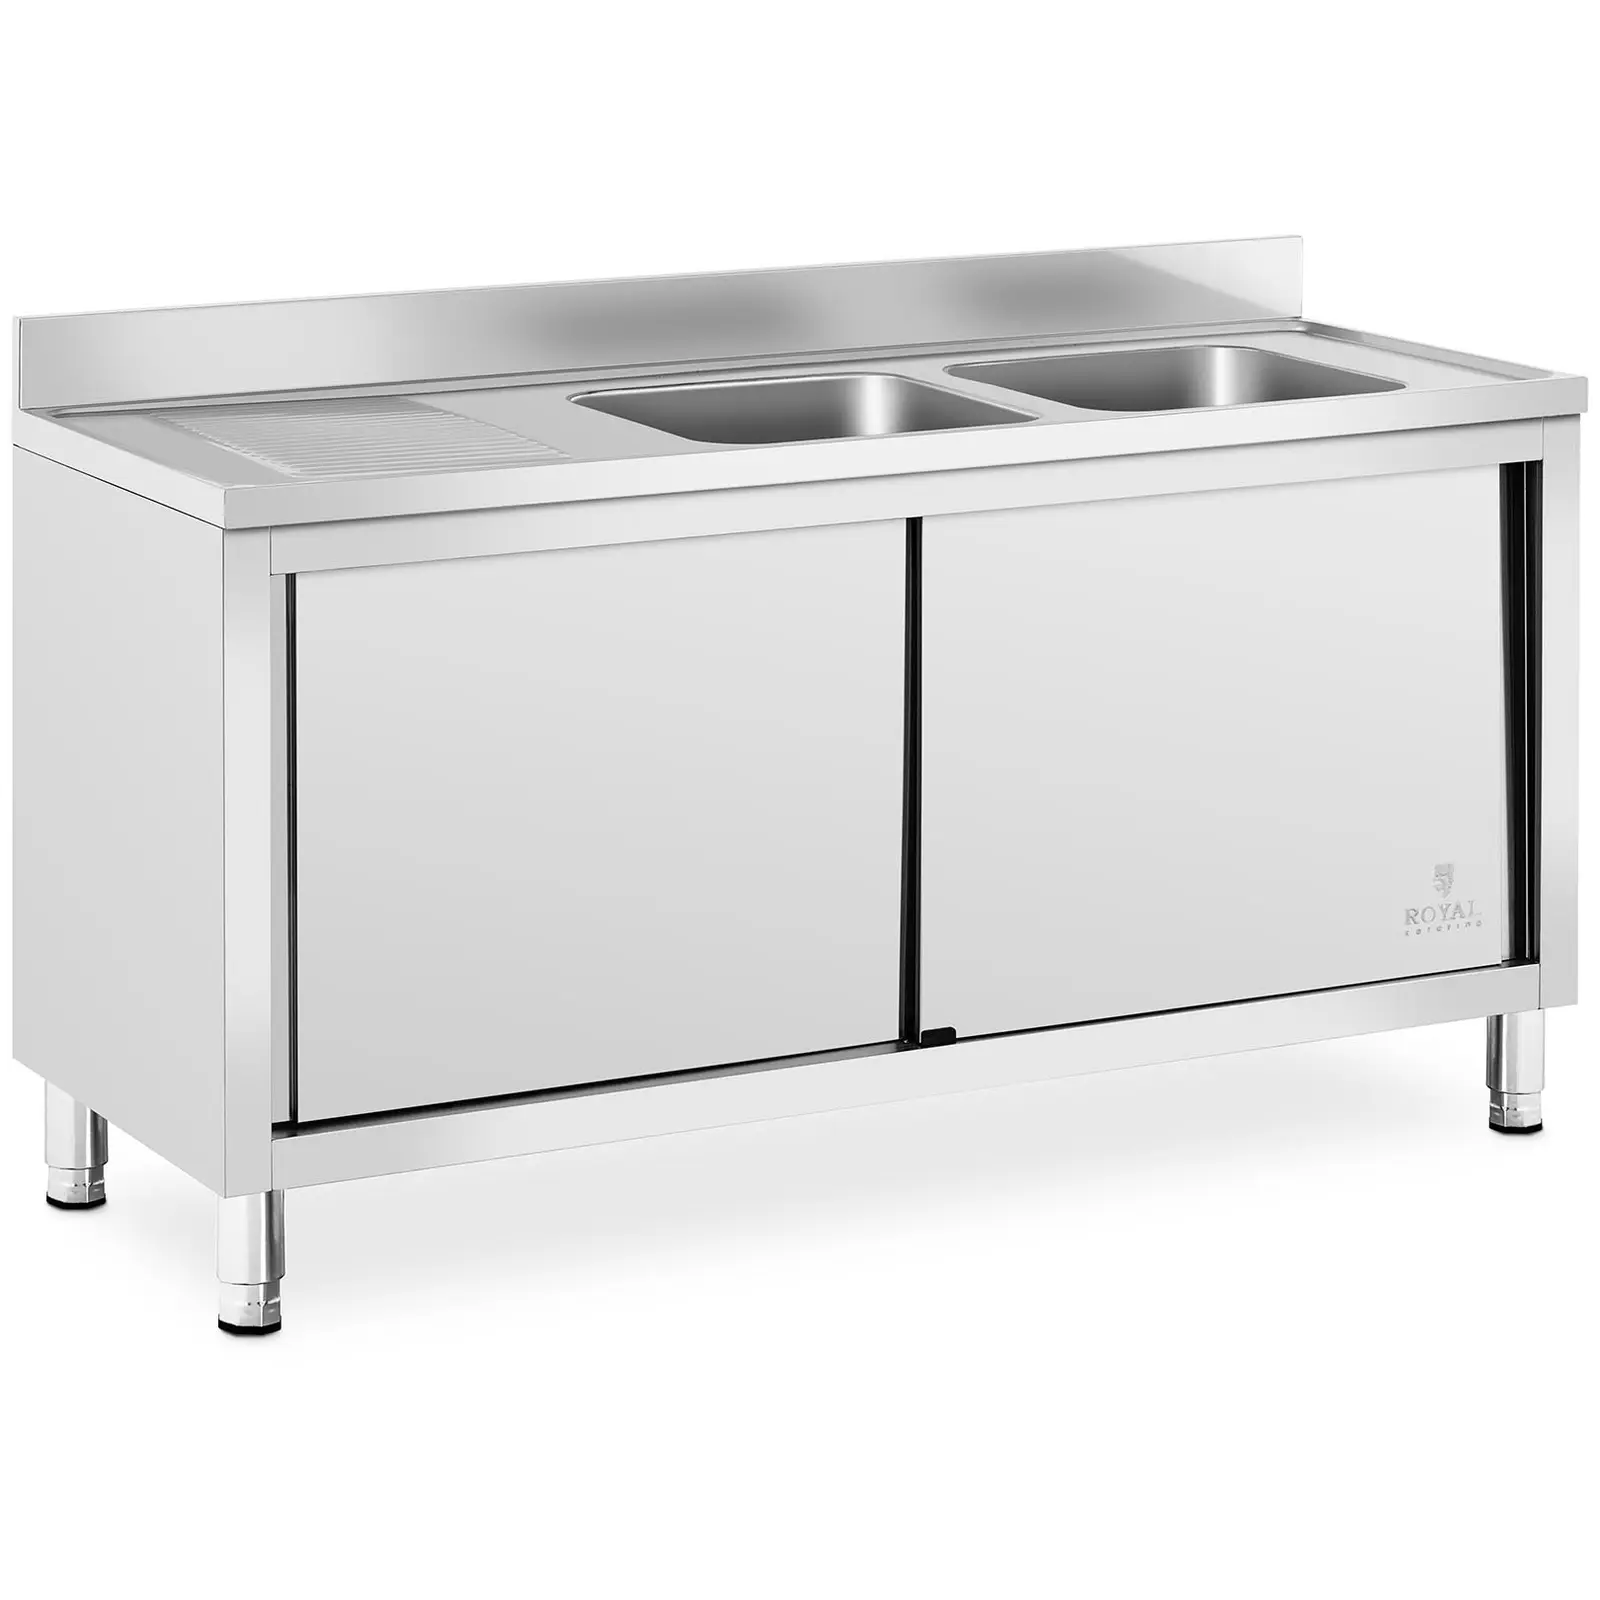 Сребърна мивка за търговска кухня - 2 мивки - Royal Catering - Неръждаема стомана - 400 x 400 x 250 мм